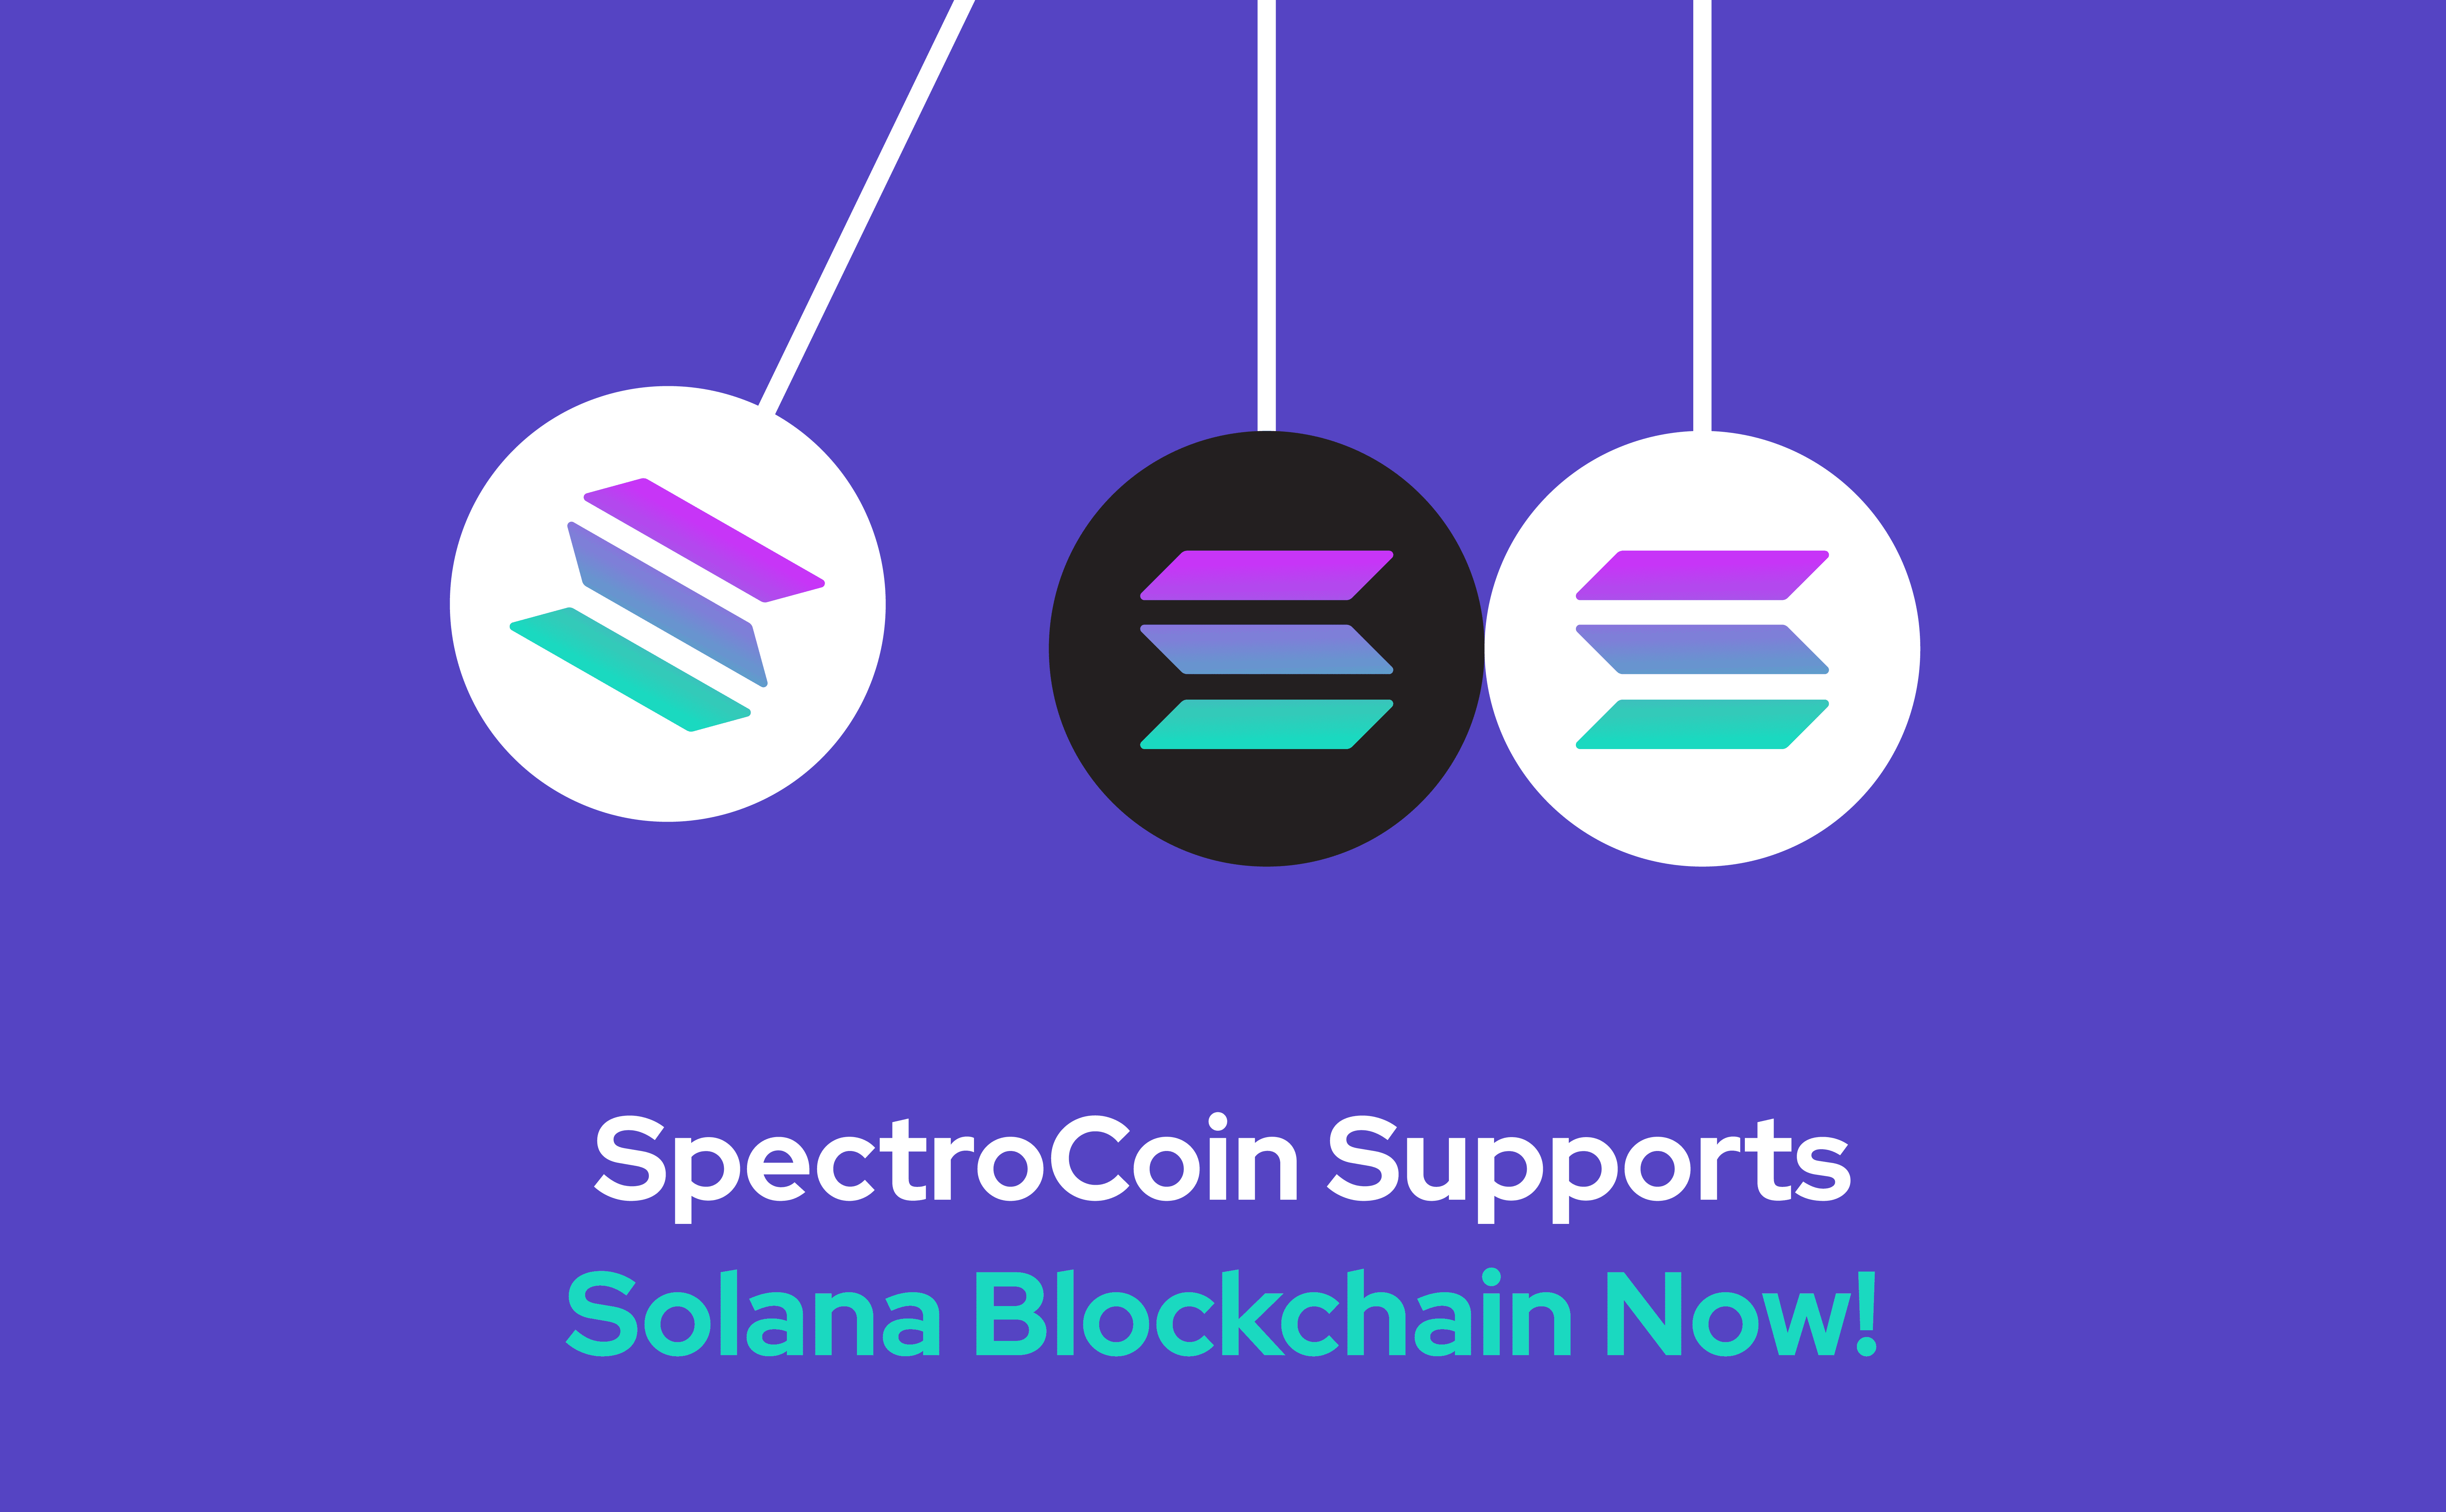 Benefits of Solana Blockchain at SpectroCoin